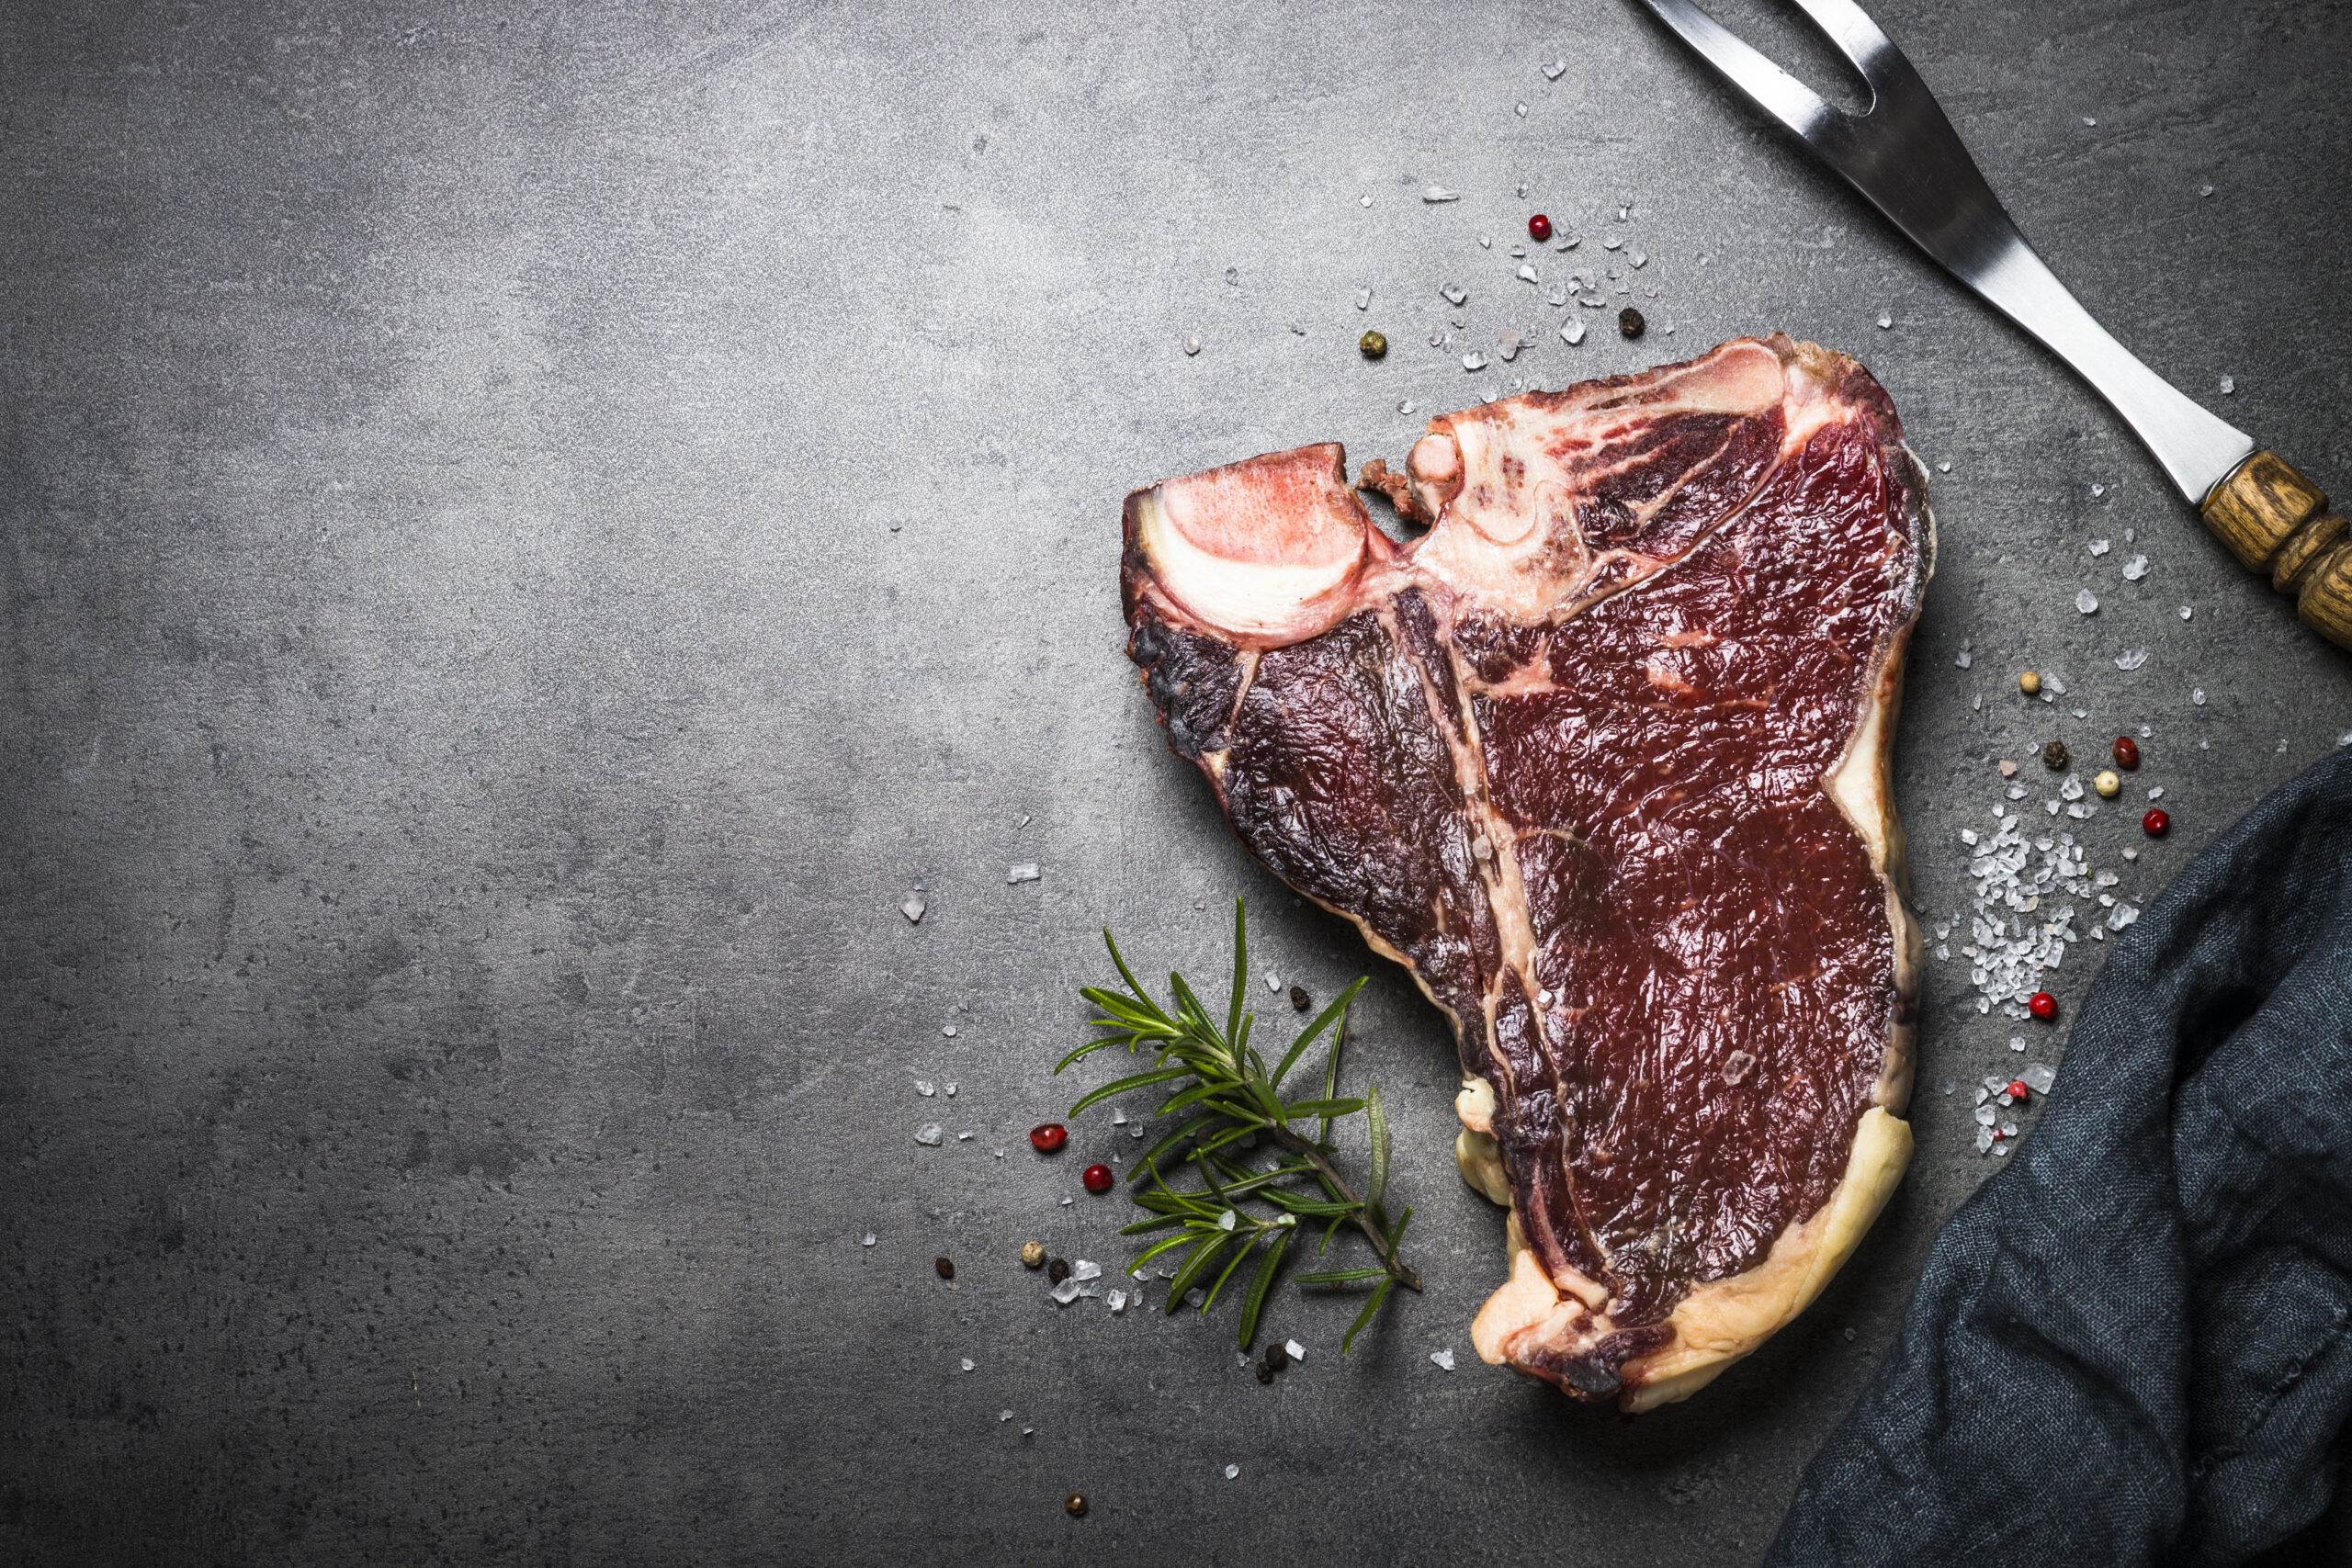 Rohes Steak mit Knochen auf einer dunklen Fläche, garniert mit Rosmarin und grobem Salz